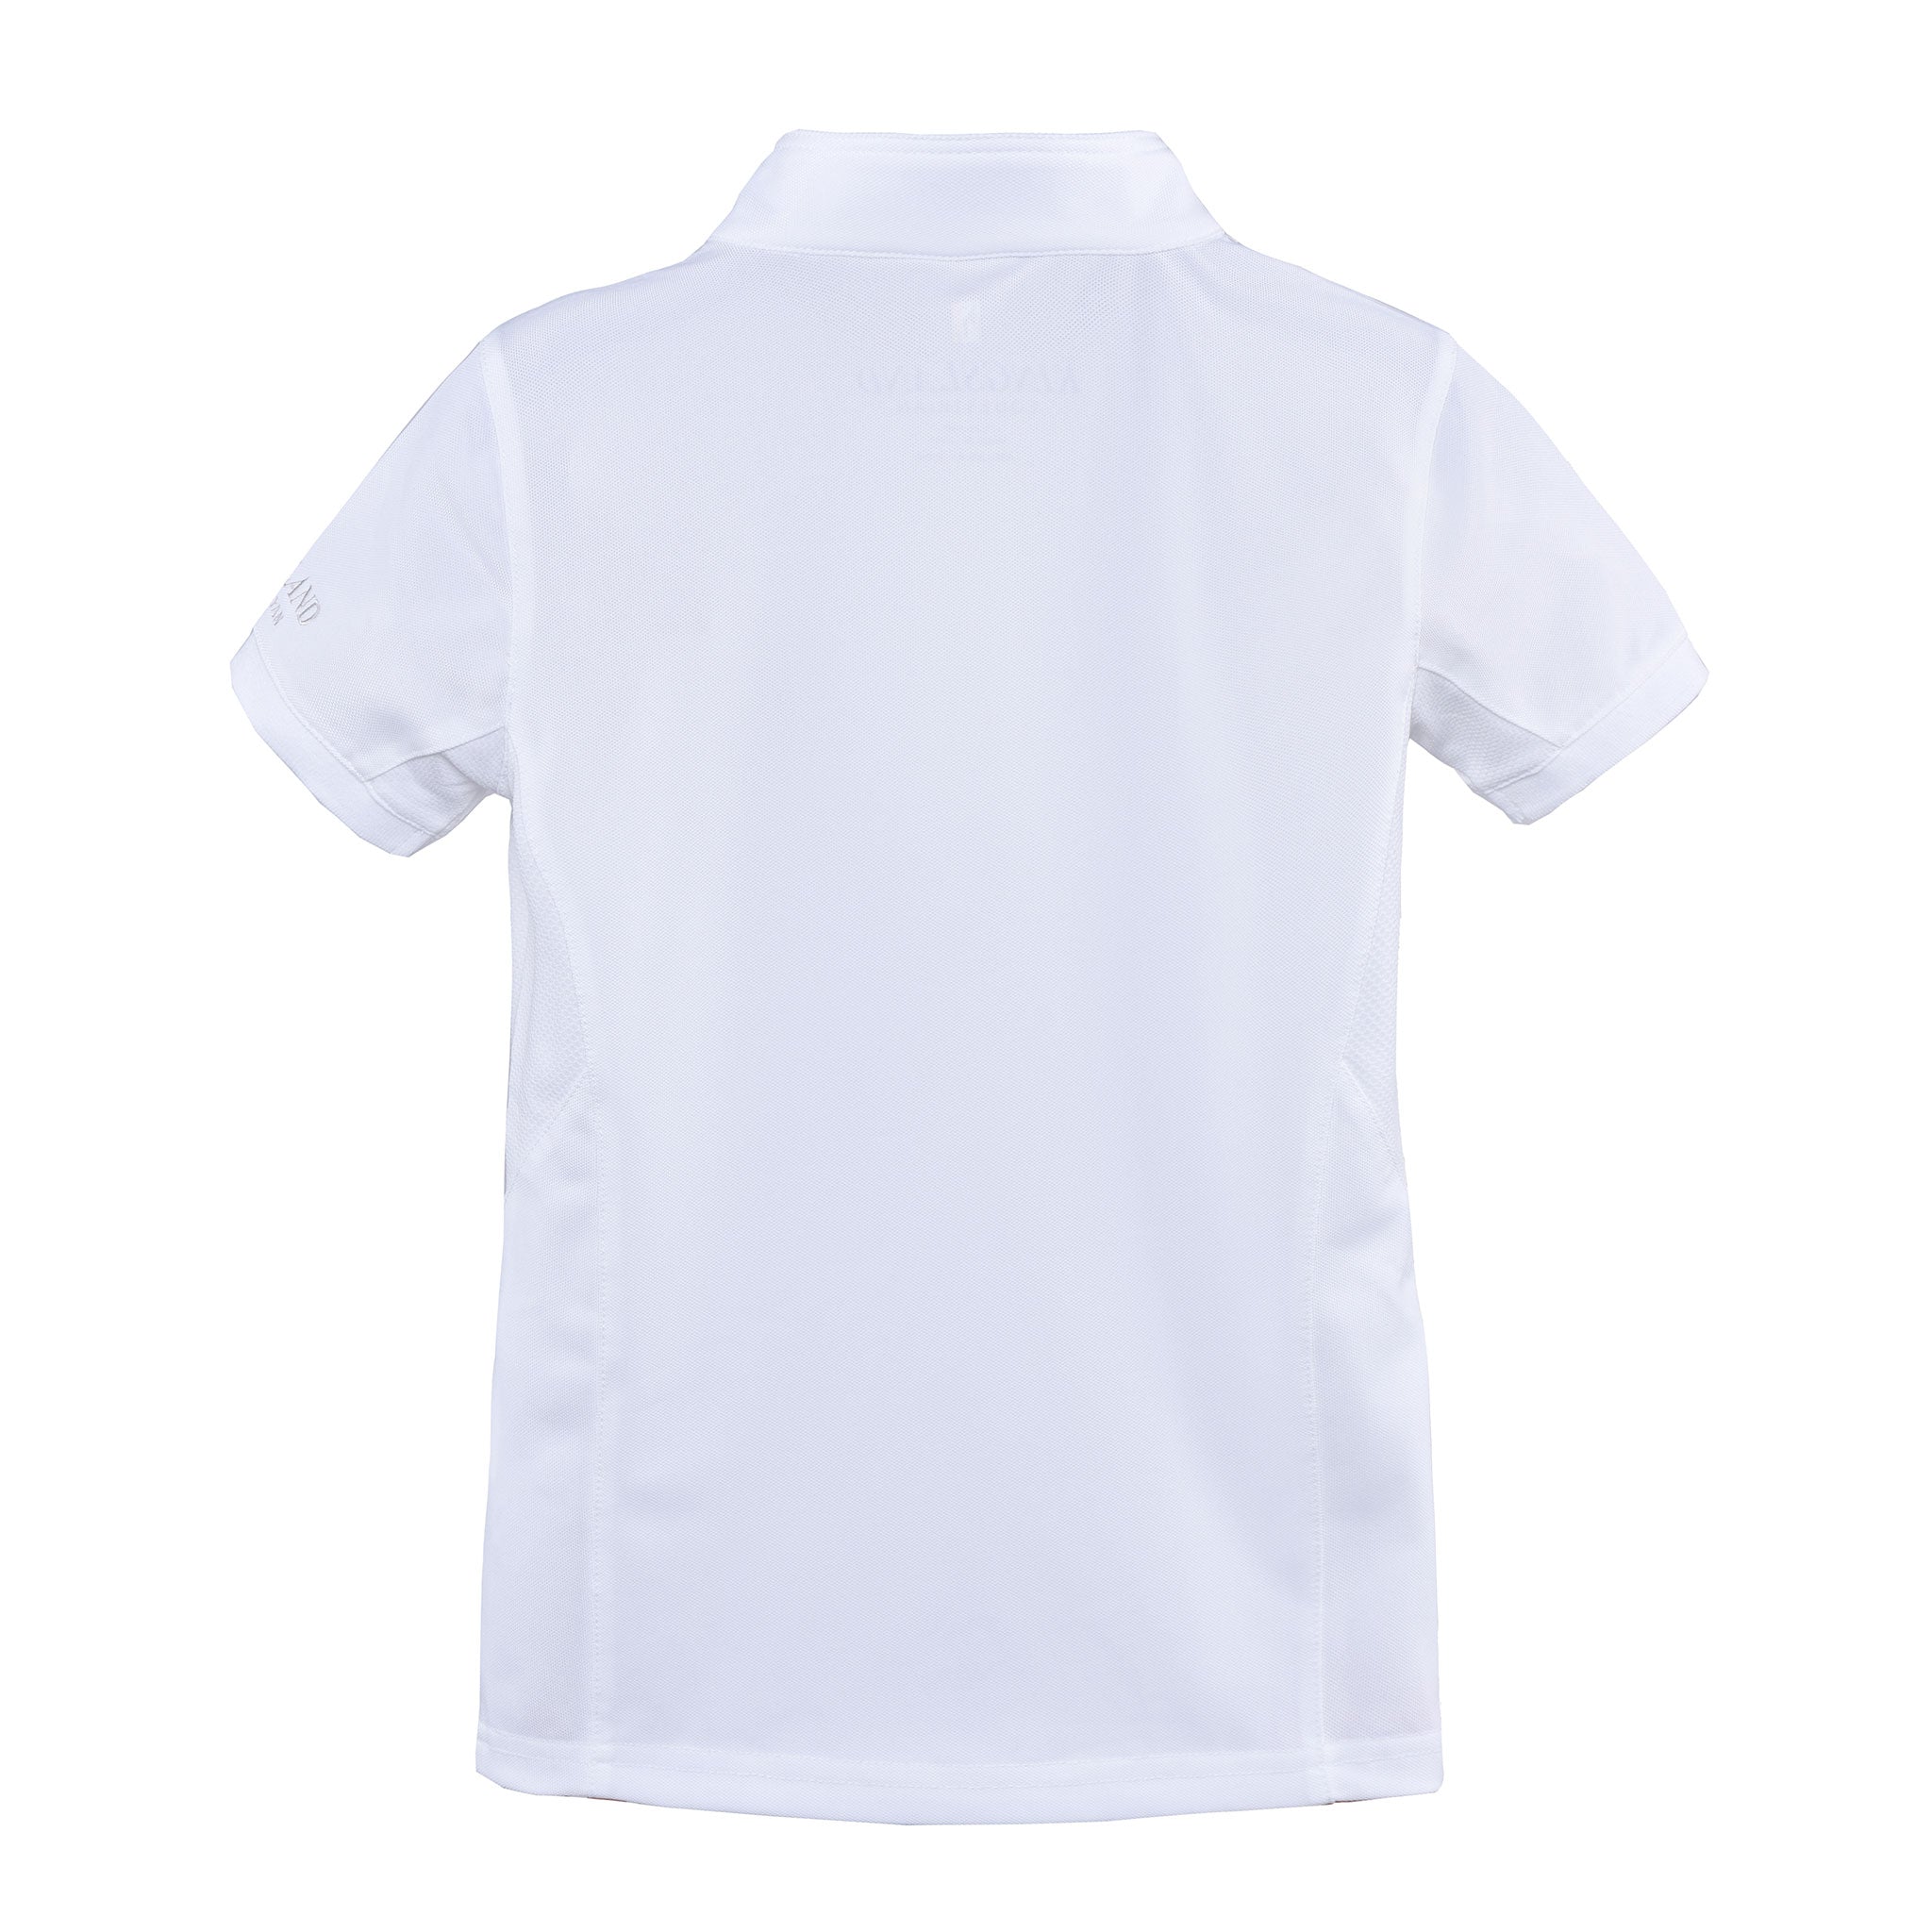 Kingsland Classic Girls Show Shirt- white